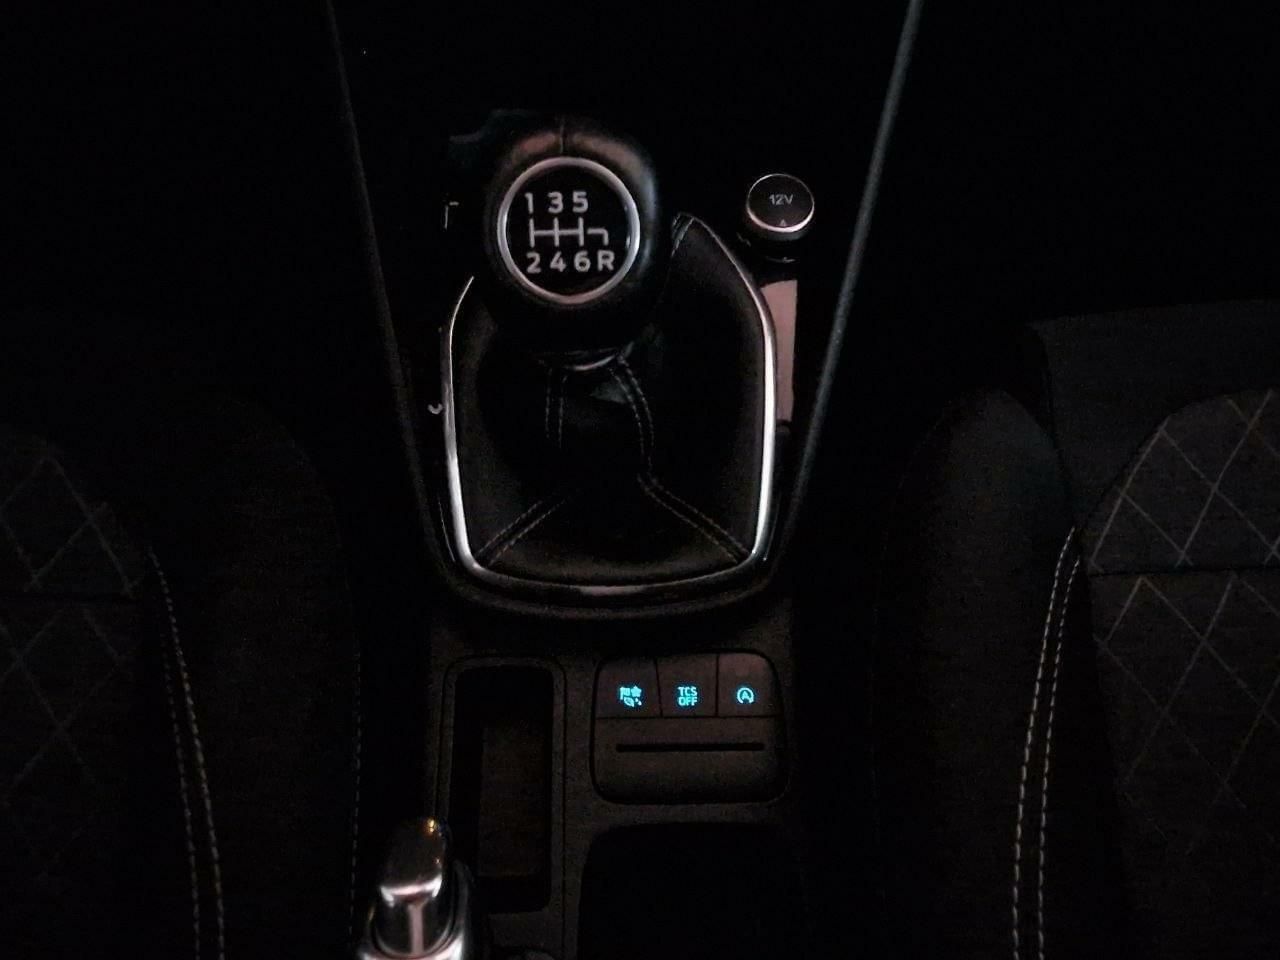 Foto Ford Fiesta 9